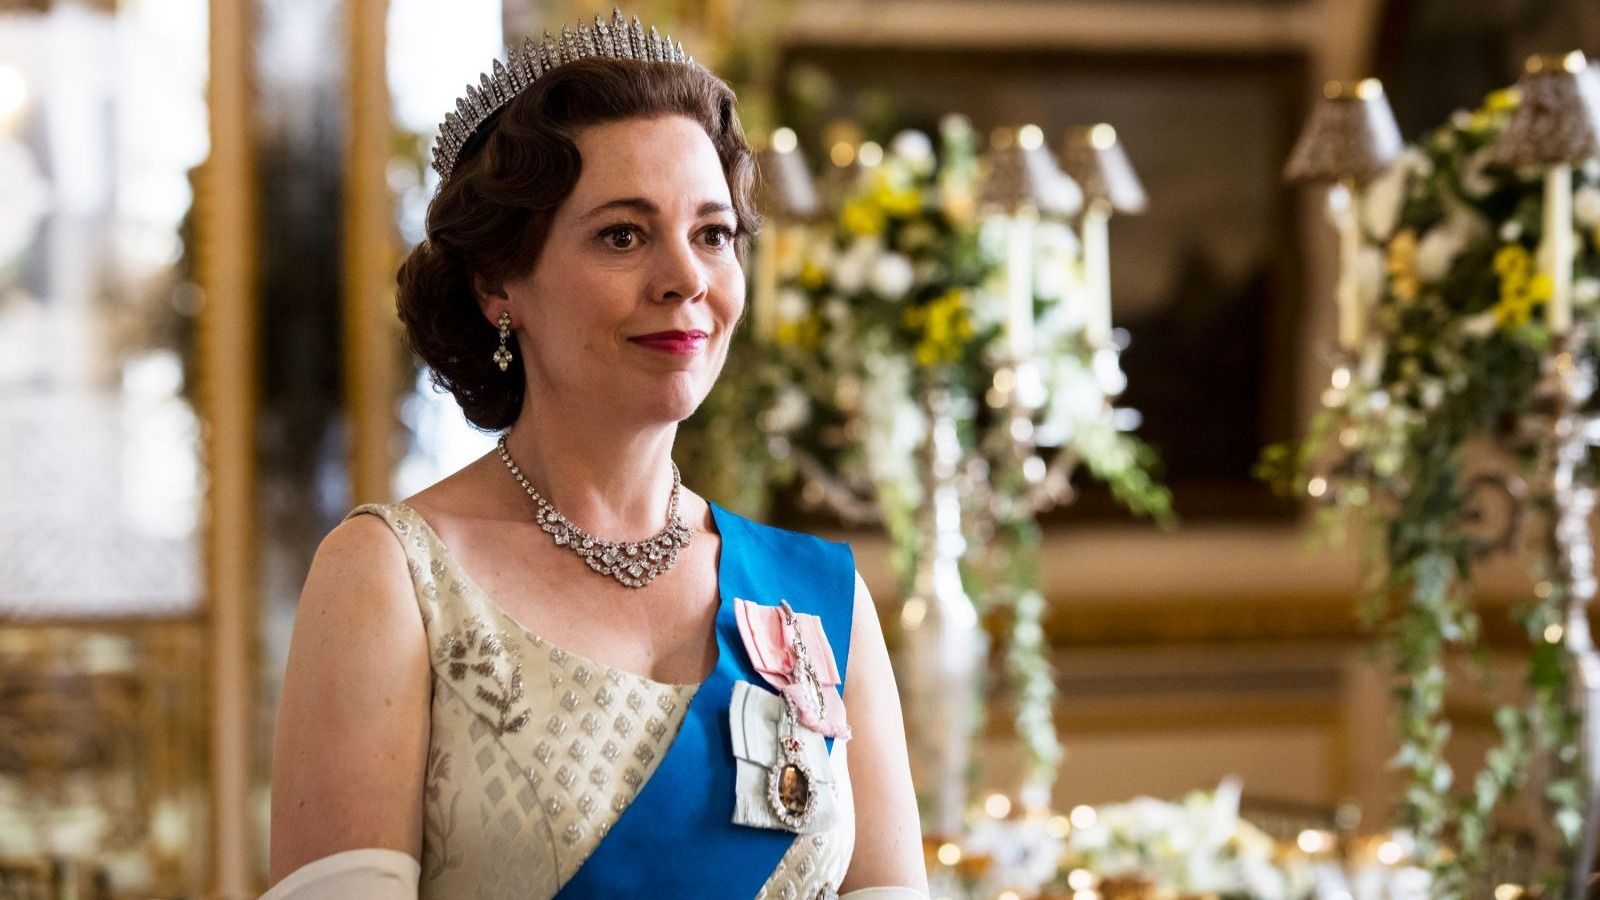 Королева Елизавета II регулярно смотрела сериал «Корона» от Netflix Общество